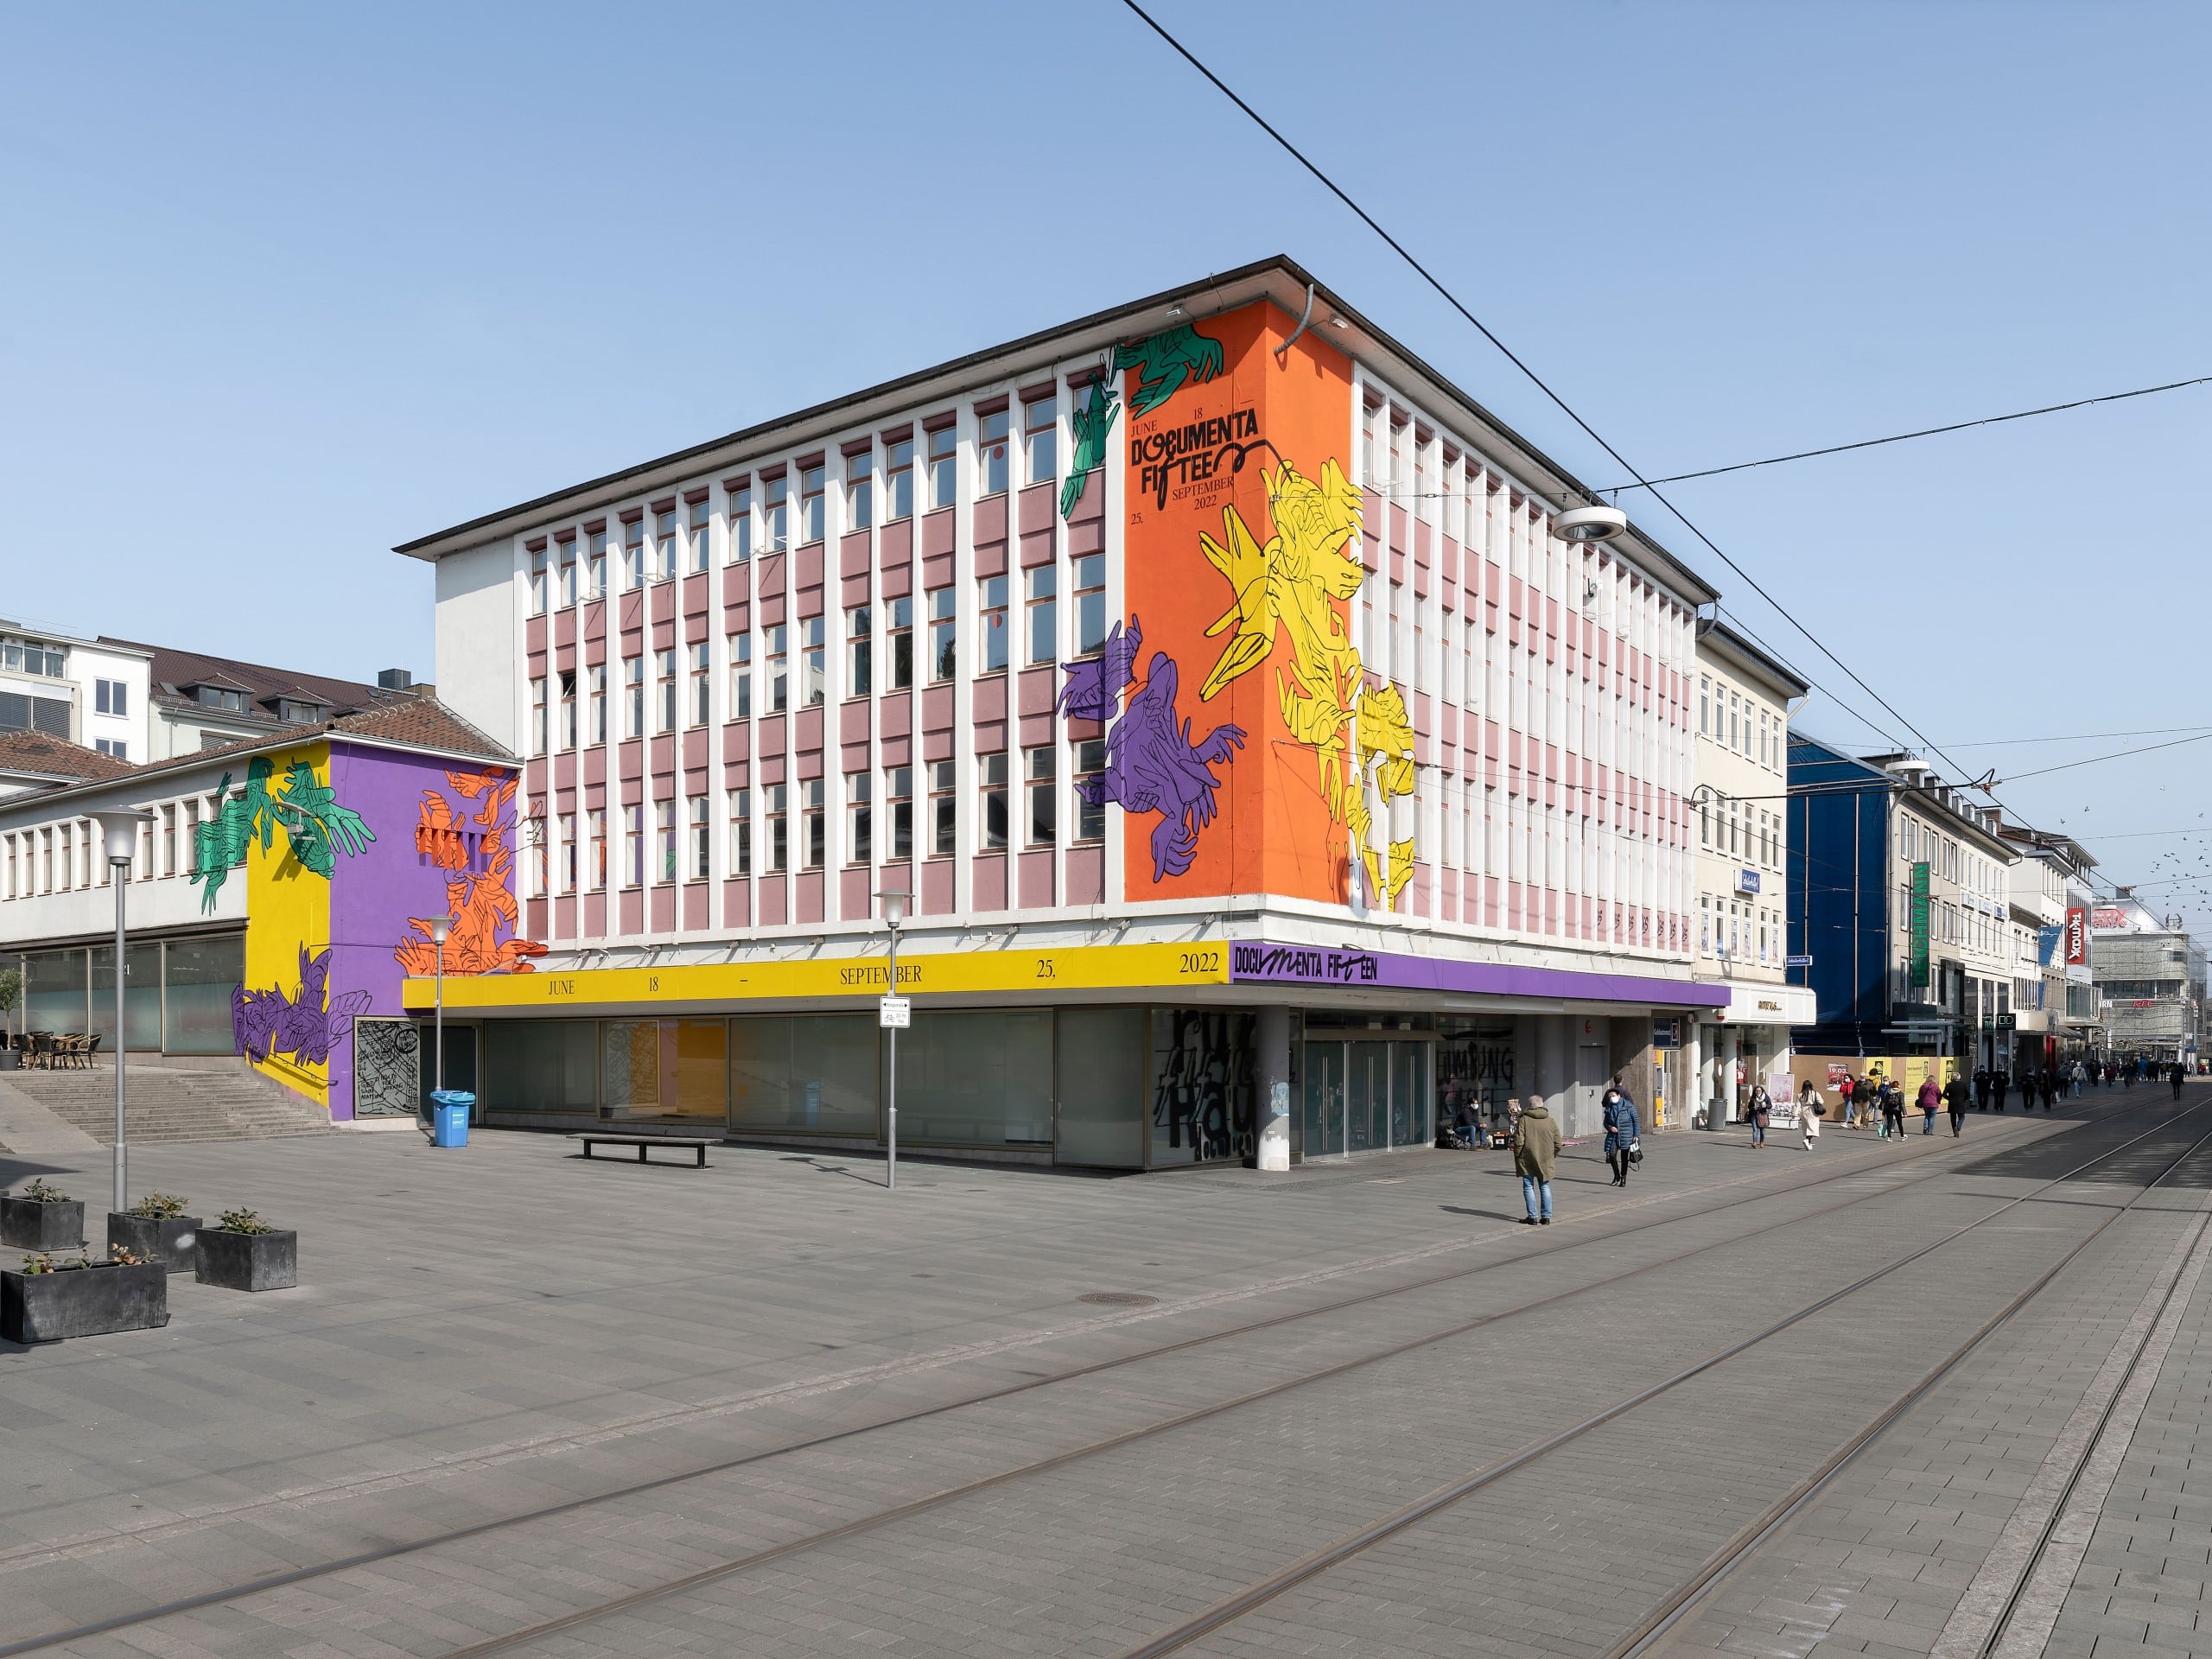 Blick auf ein Gebäude mit bunten Malereien auf der Fassade. documenta fifteen, ruruHaus, Kassel, 2021, Foto: Nicolas Wefers